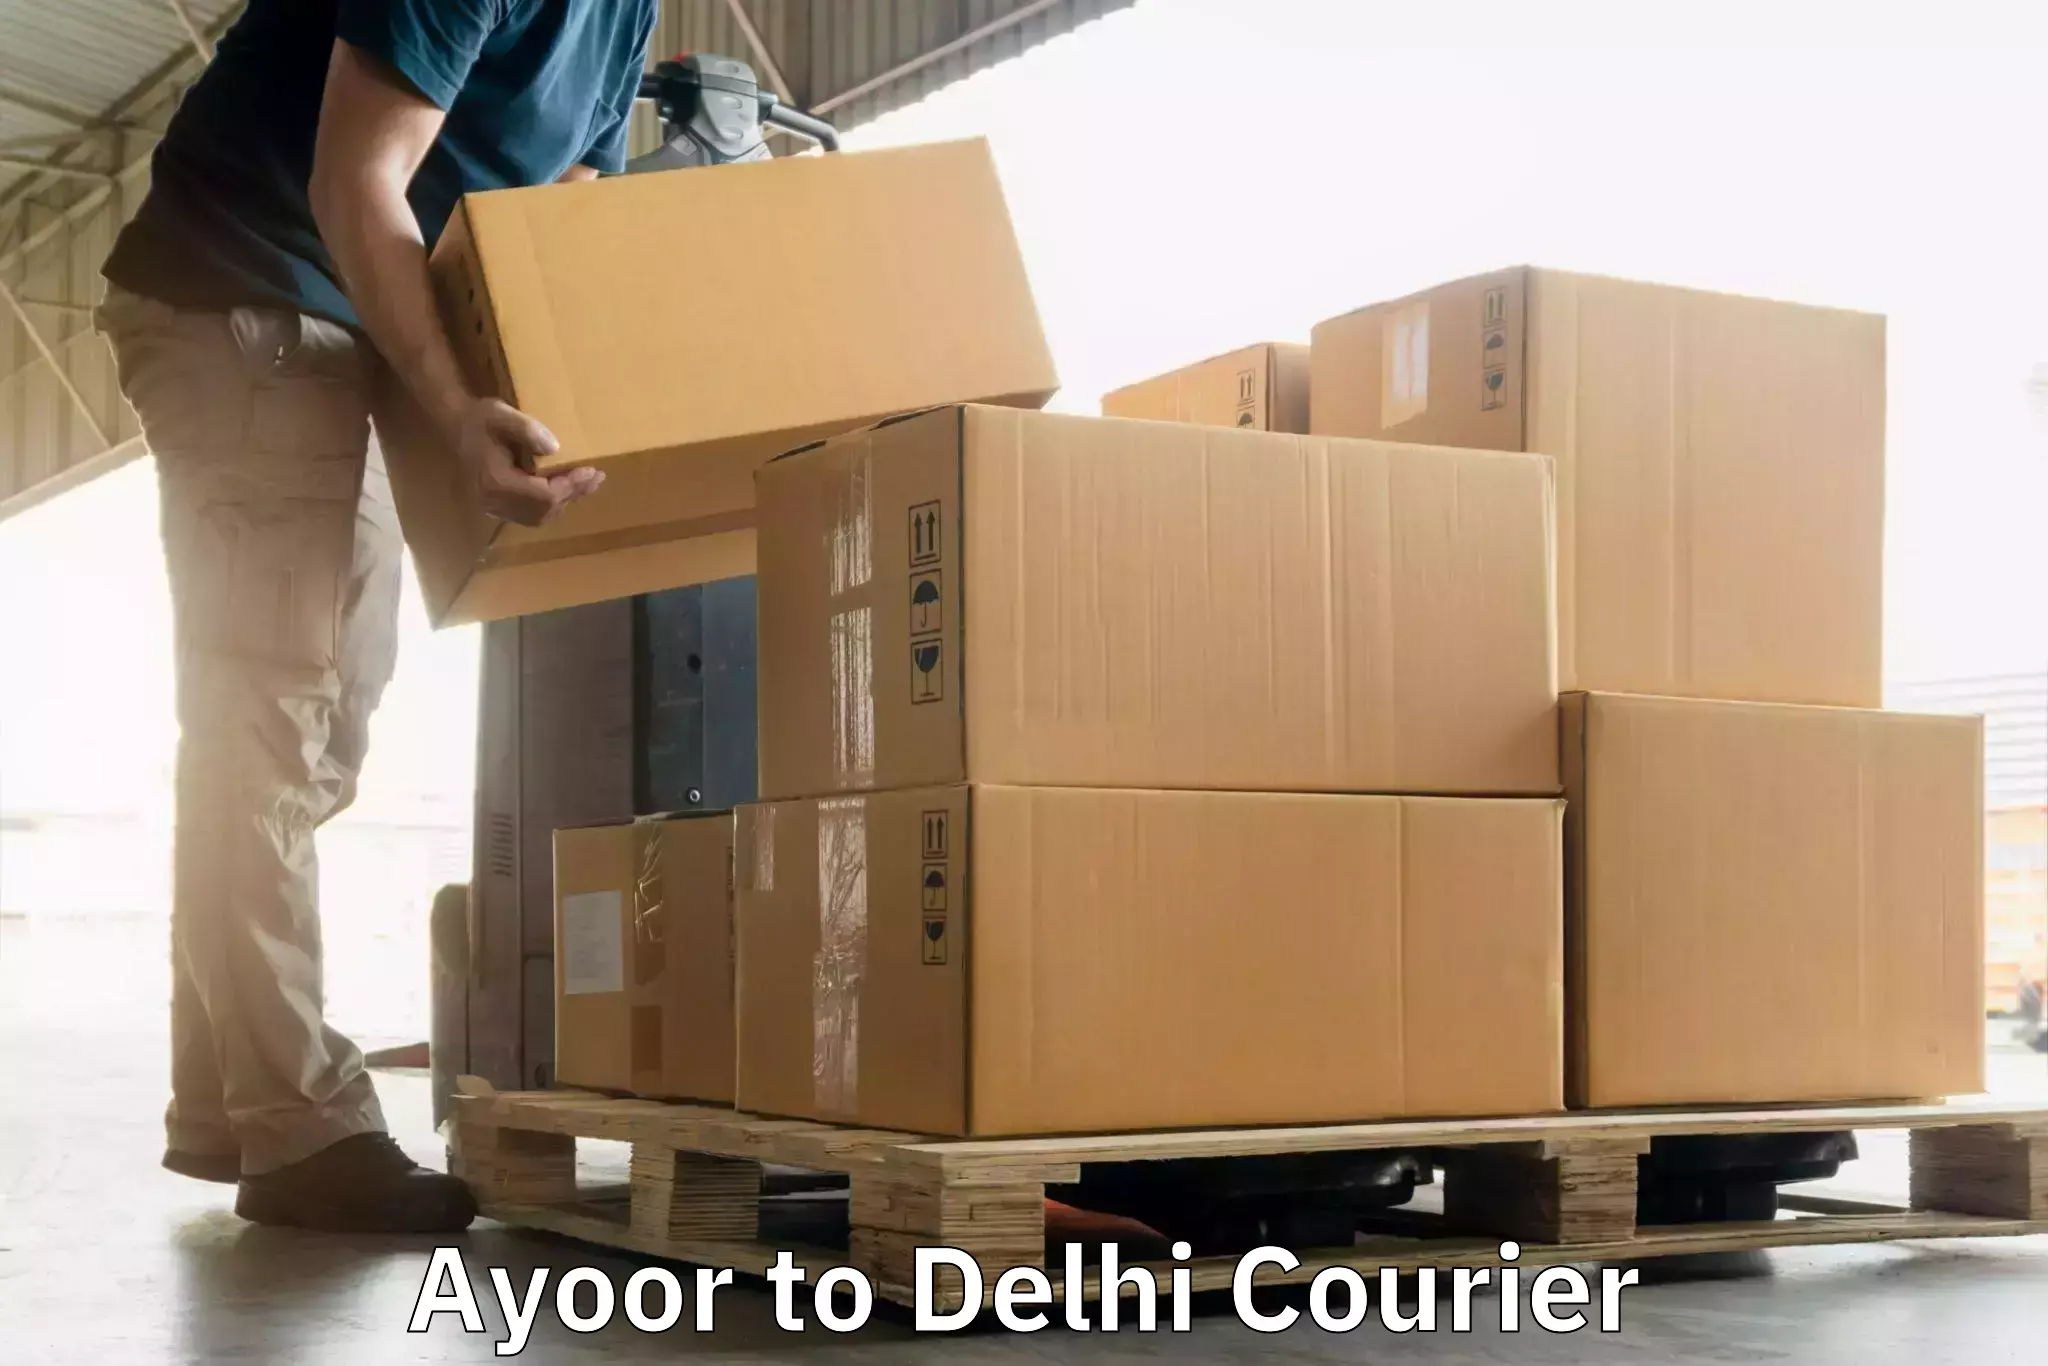 Small parcel delivery Ayoor to NIT Delhi